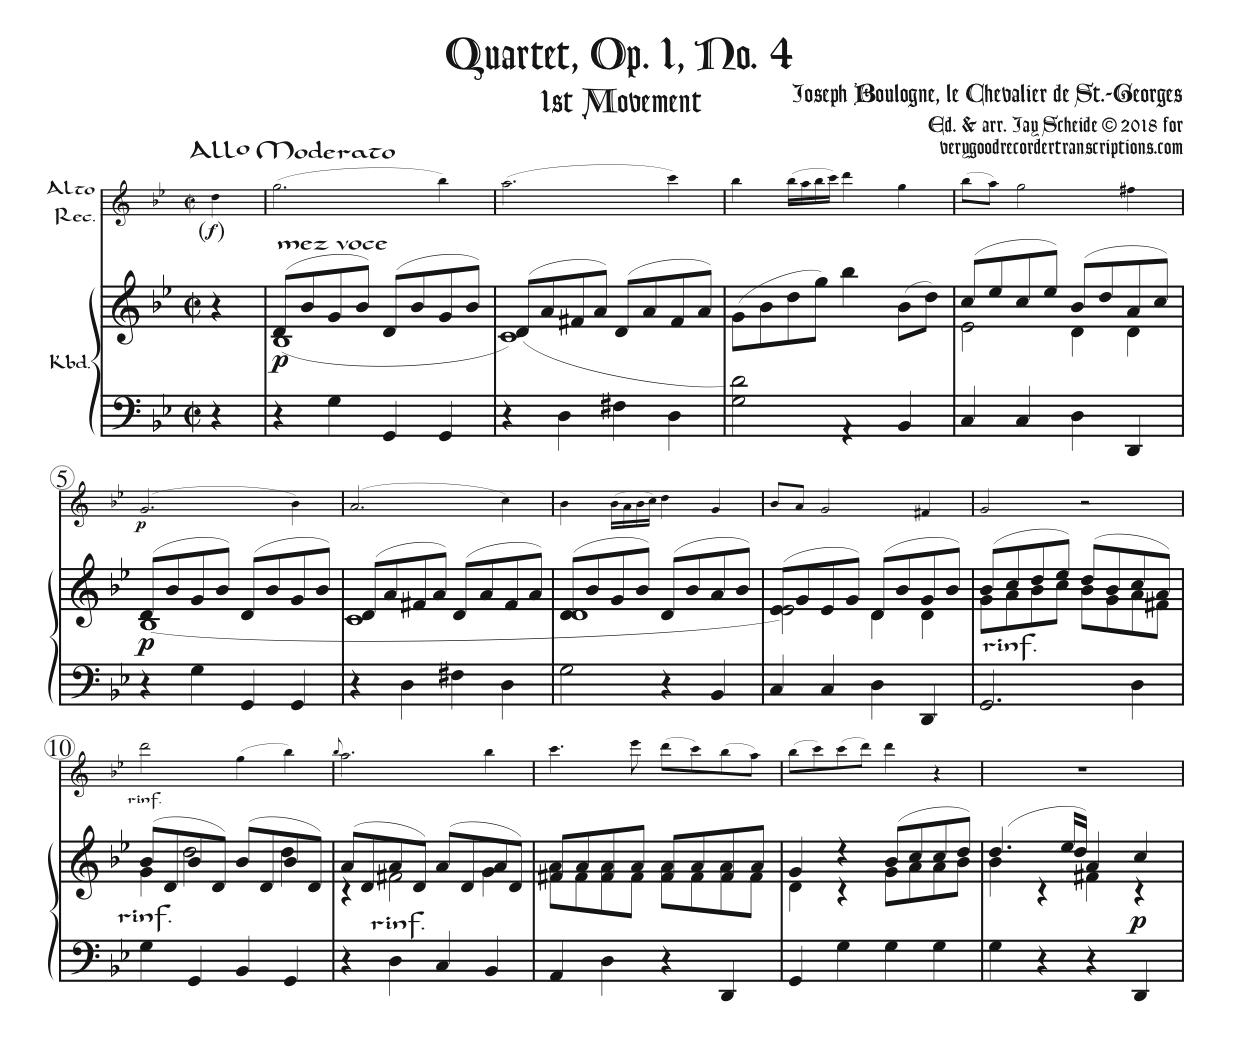 Quartet, Op. 1, No. 4